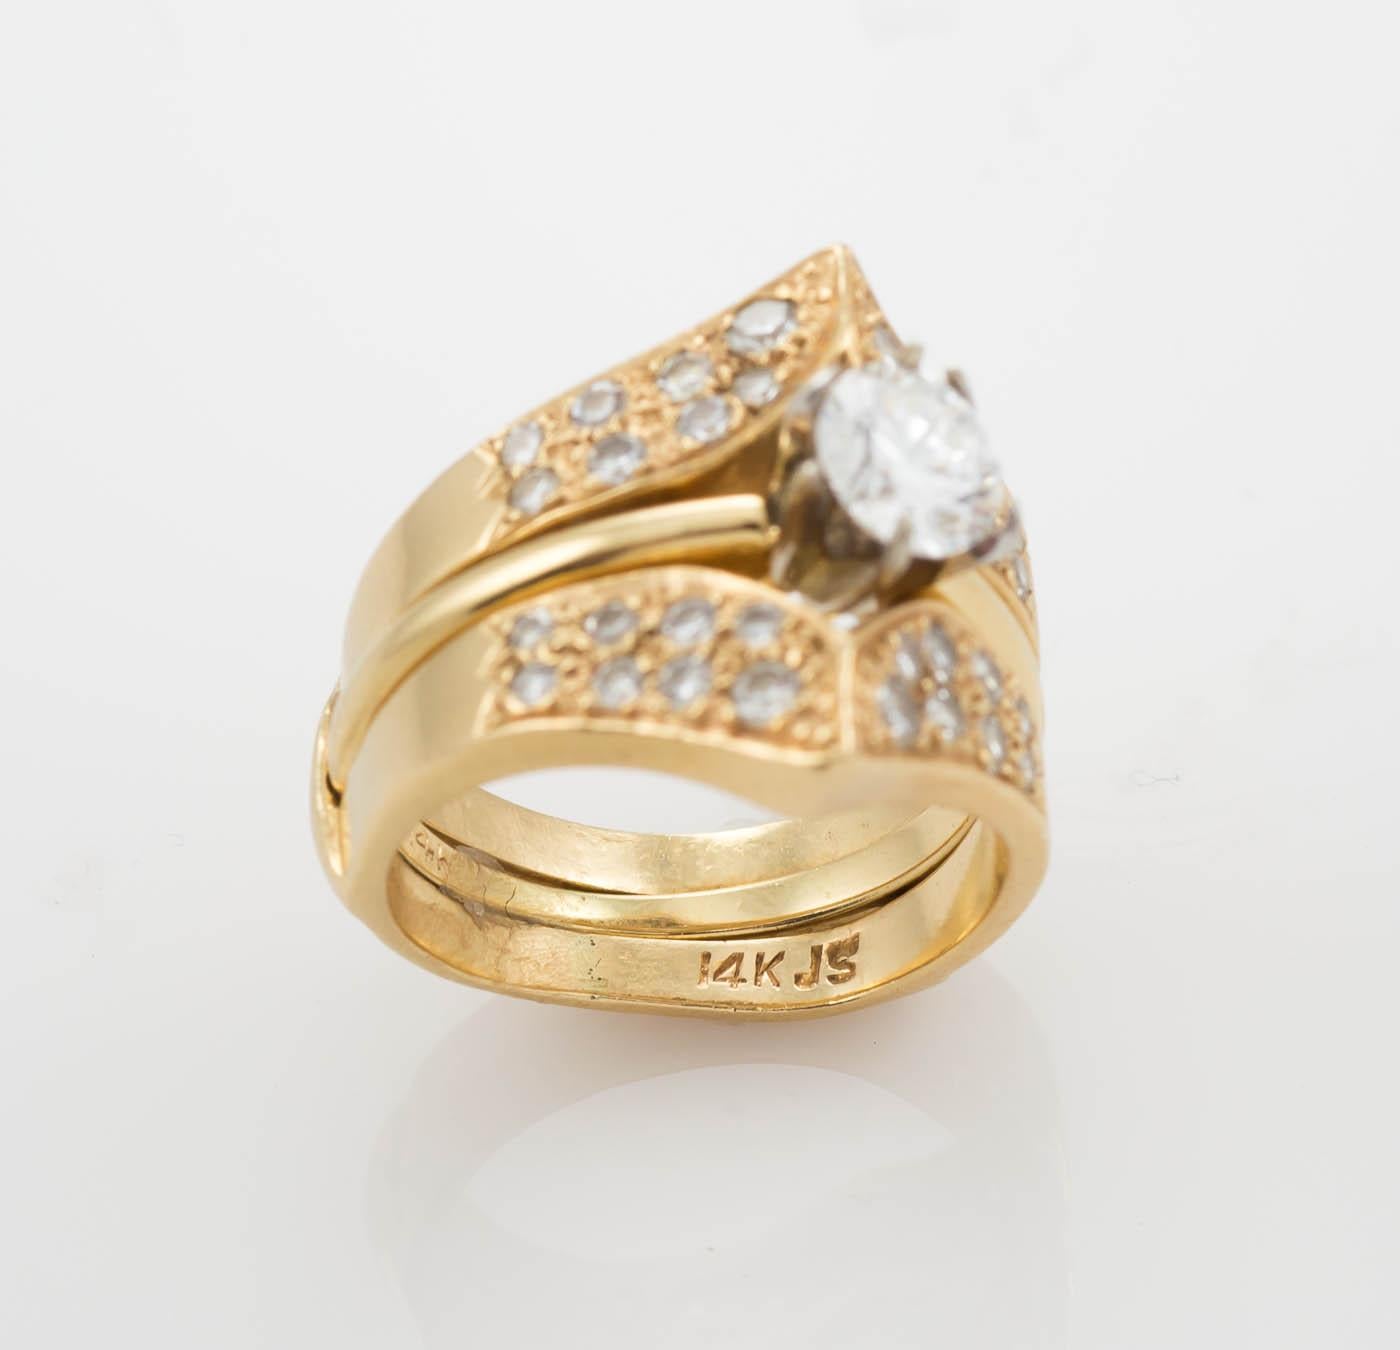 Bague solitaire à diamant pour femme en or jaune 14k.
Estampillé 14k et pèse 2 grammes.
Le diamant est un brillant rond, 0,58 carat, couleur F, clarté Vs1, très bonne taille, rapport GIA n° 1176461707.
Le diamant est serti dans un cadre de style